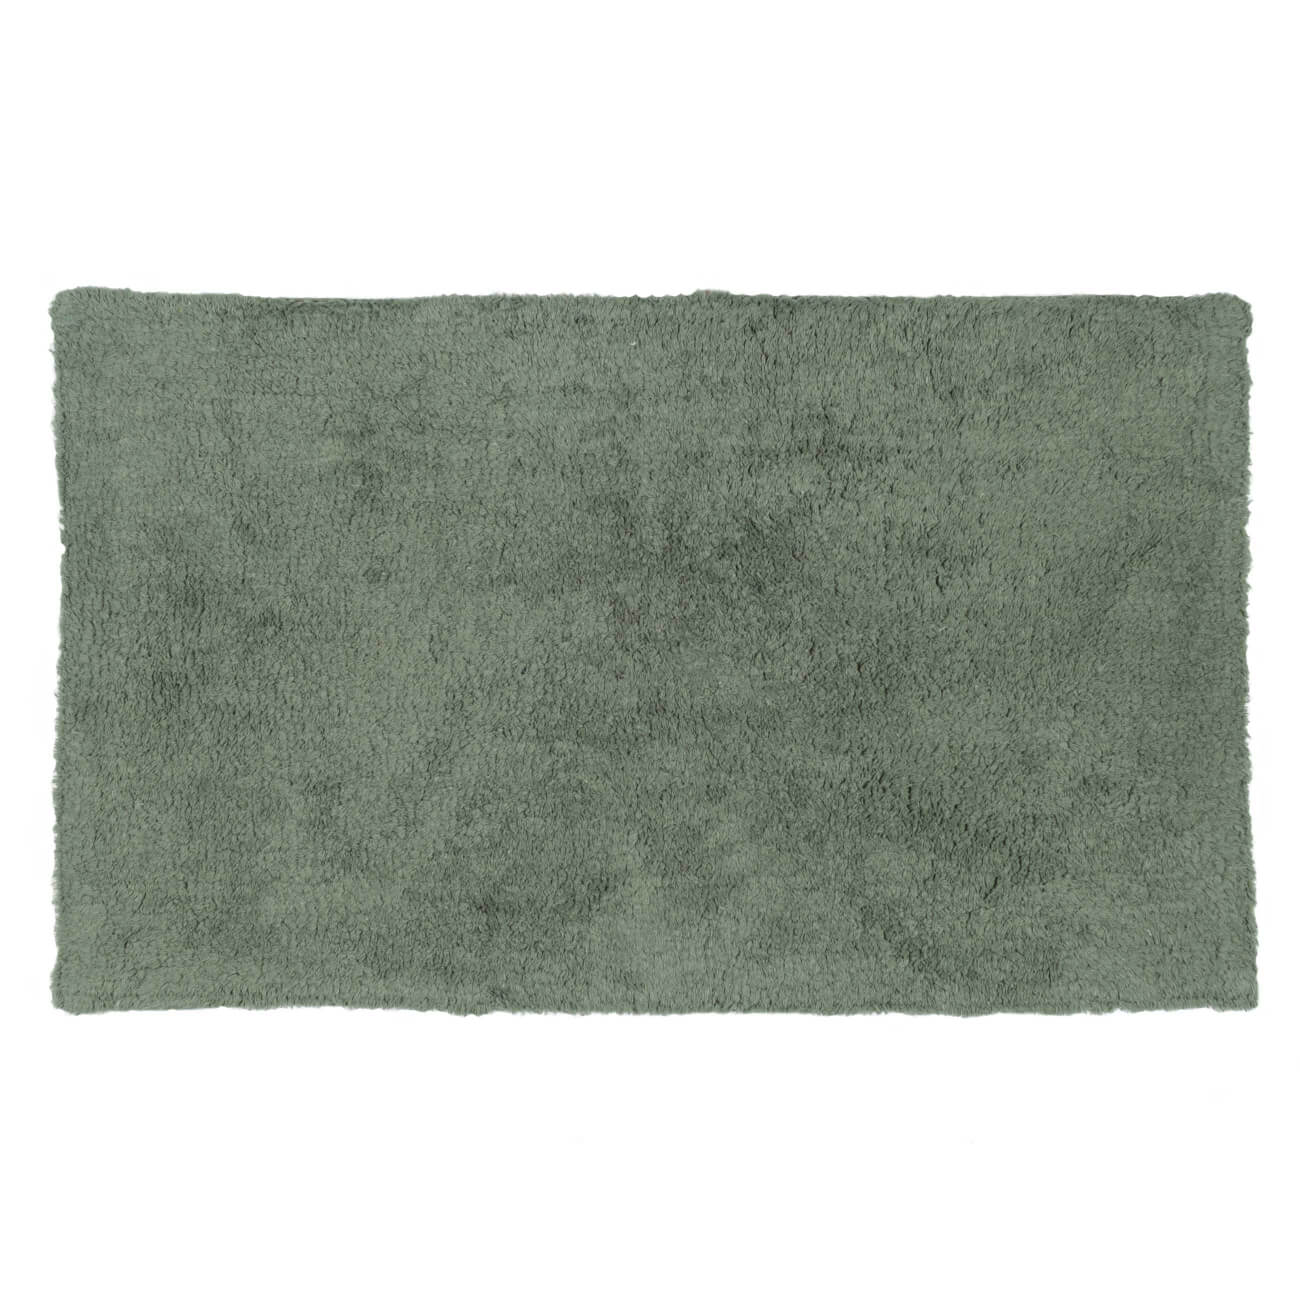 Коврик, 50х80 см, хлопок, зеленый, Cottony spa коврик fora